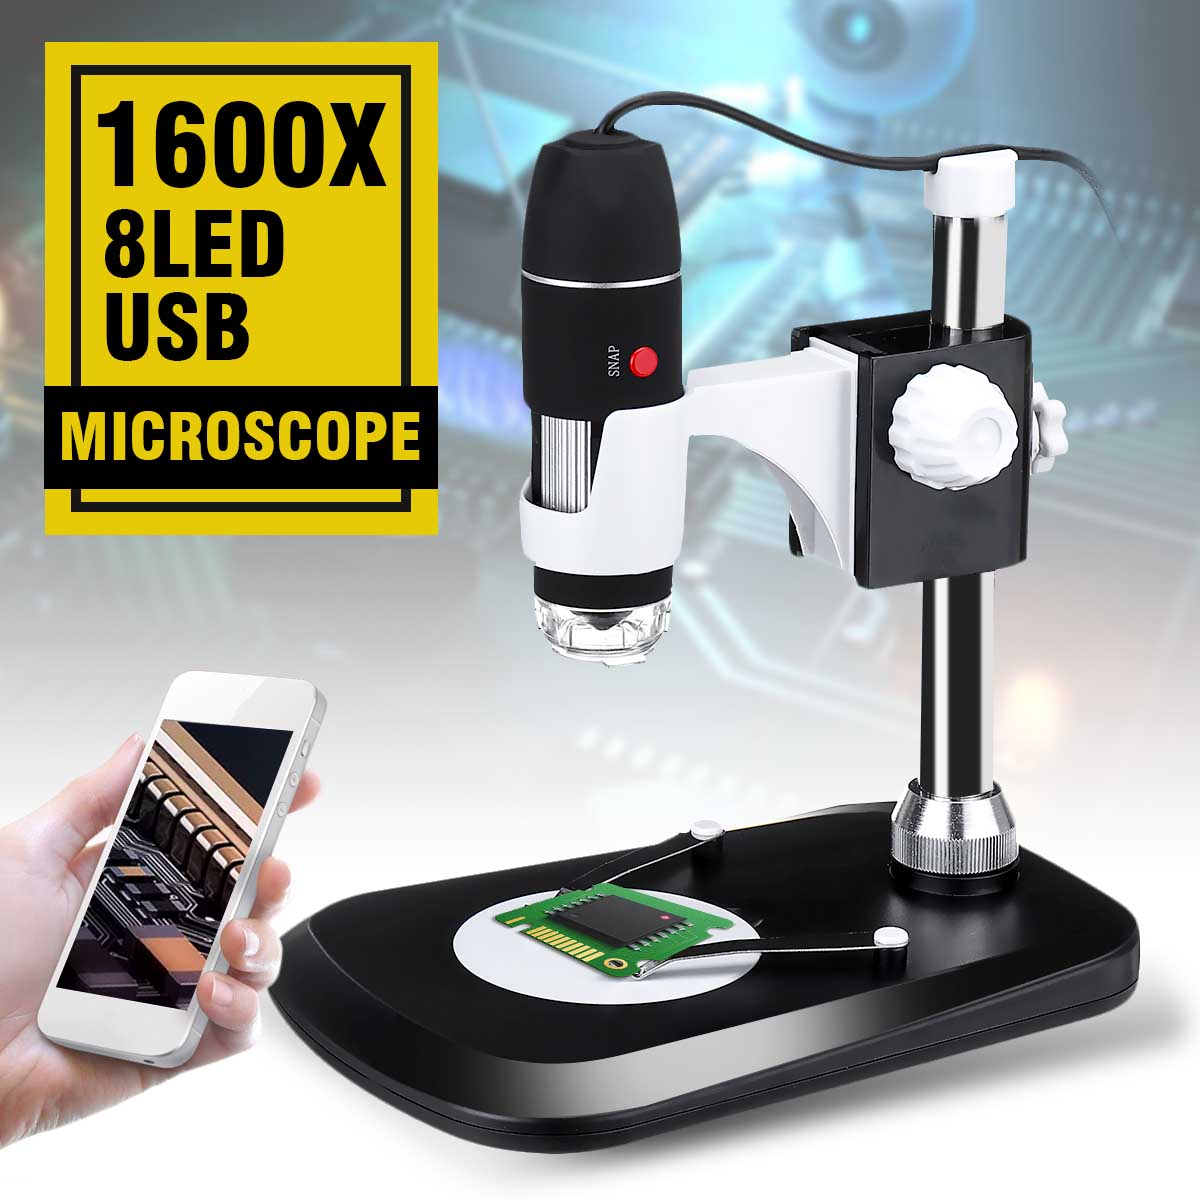 1600x 8 led zoom usb digitalt mikroskop forstørrelsesglas endoskop kamera + videostativ